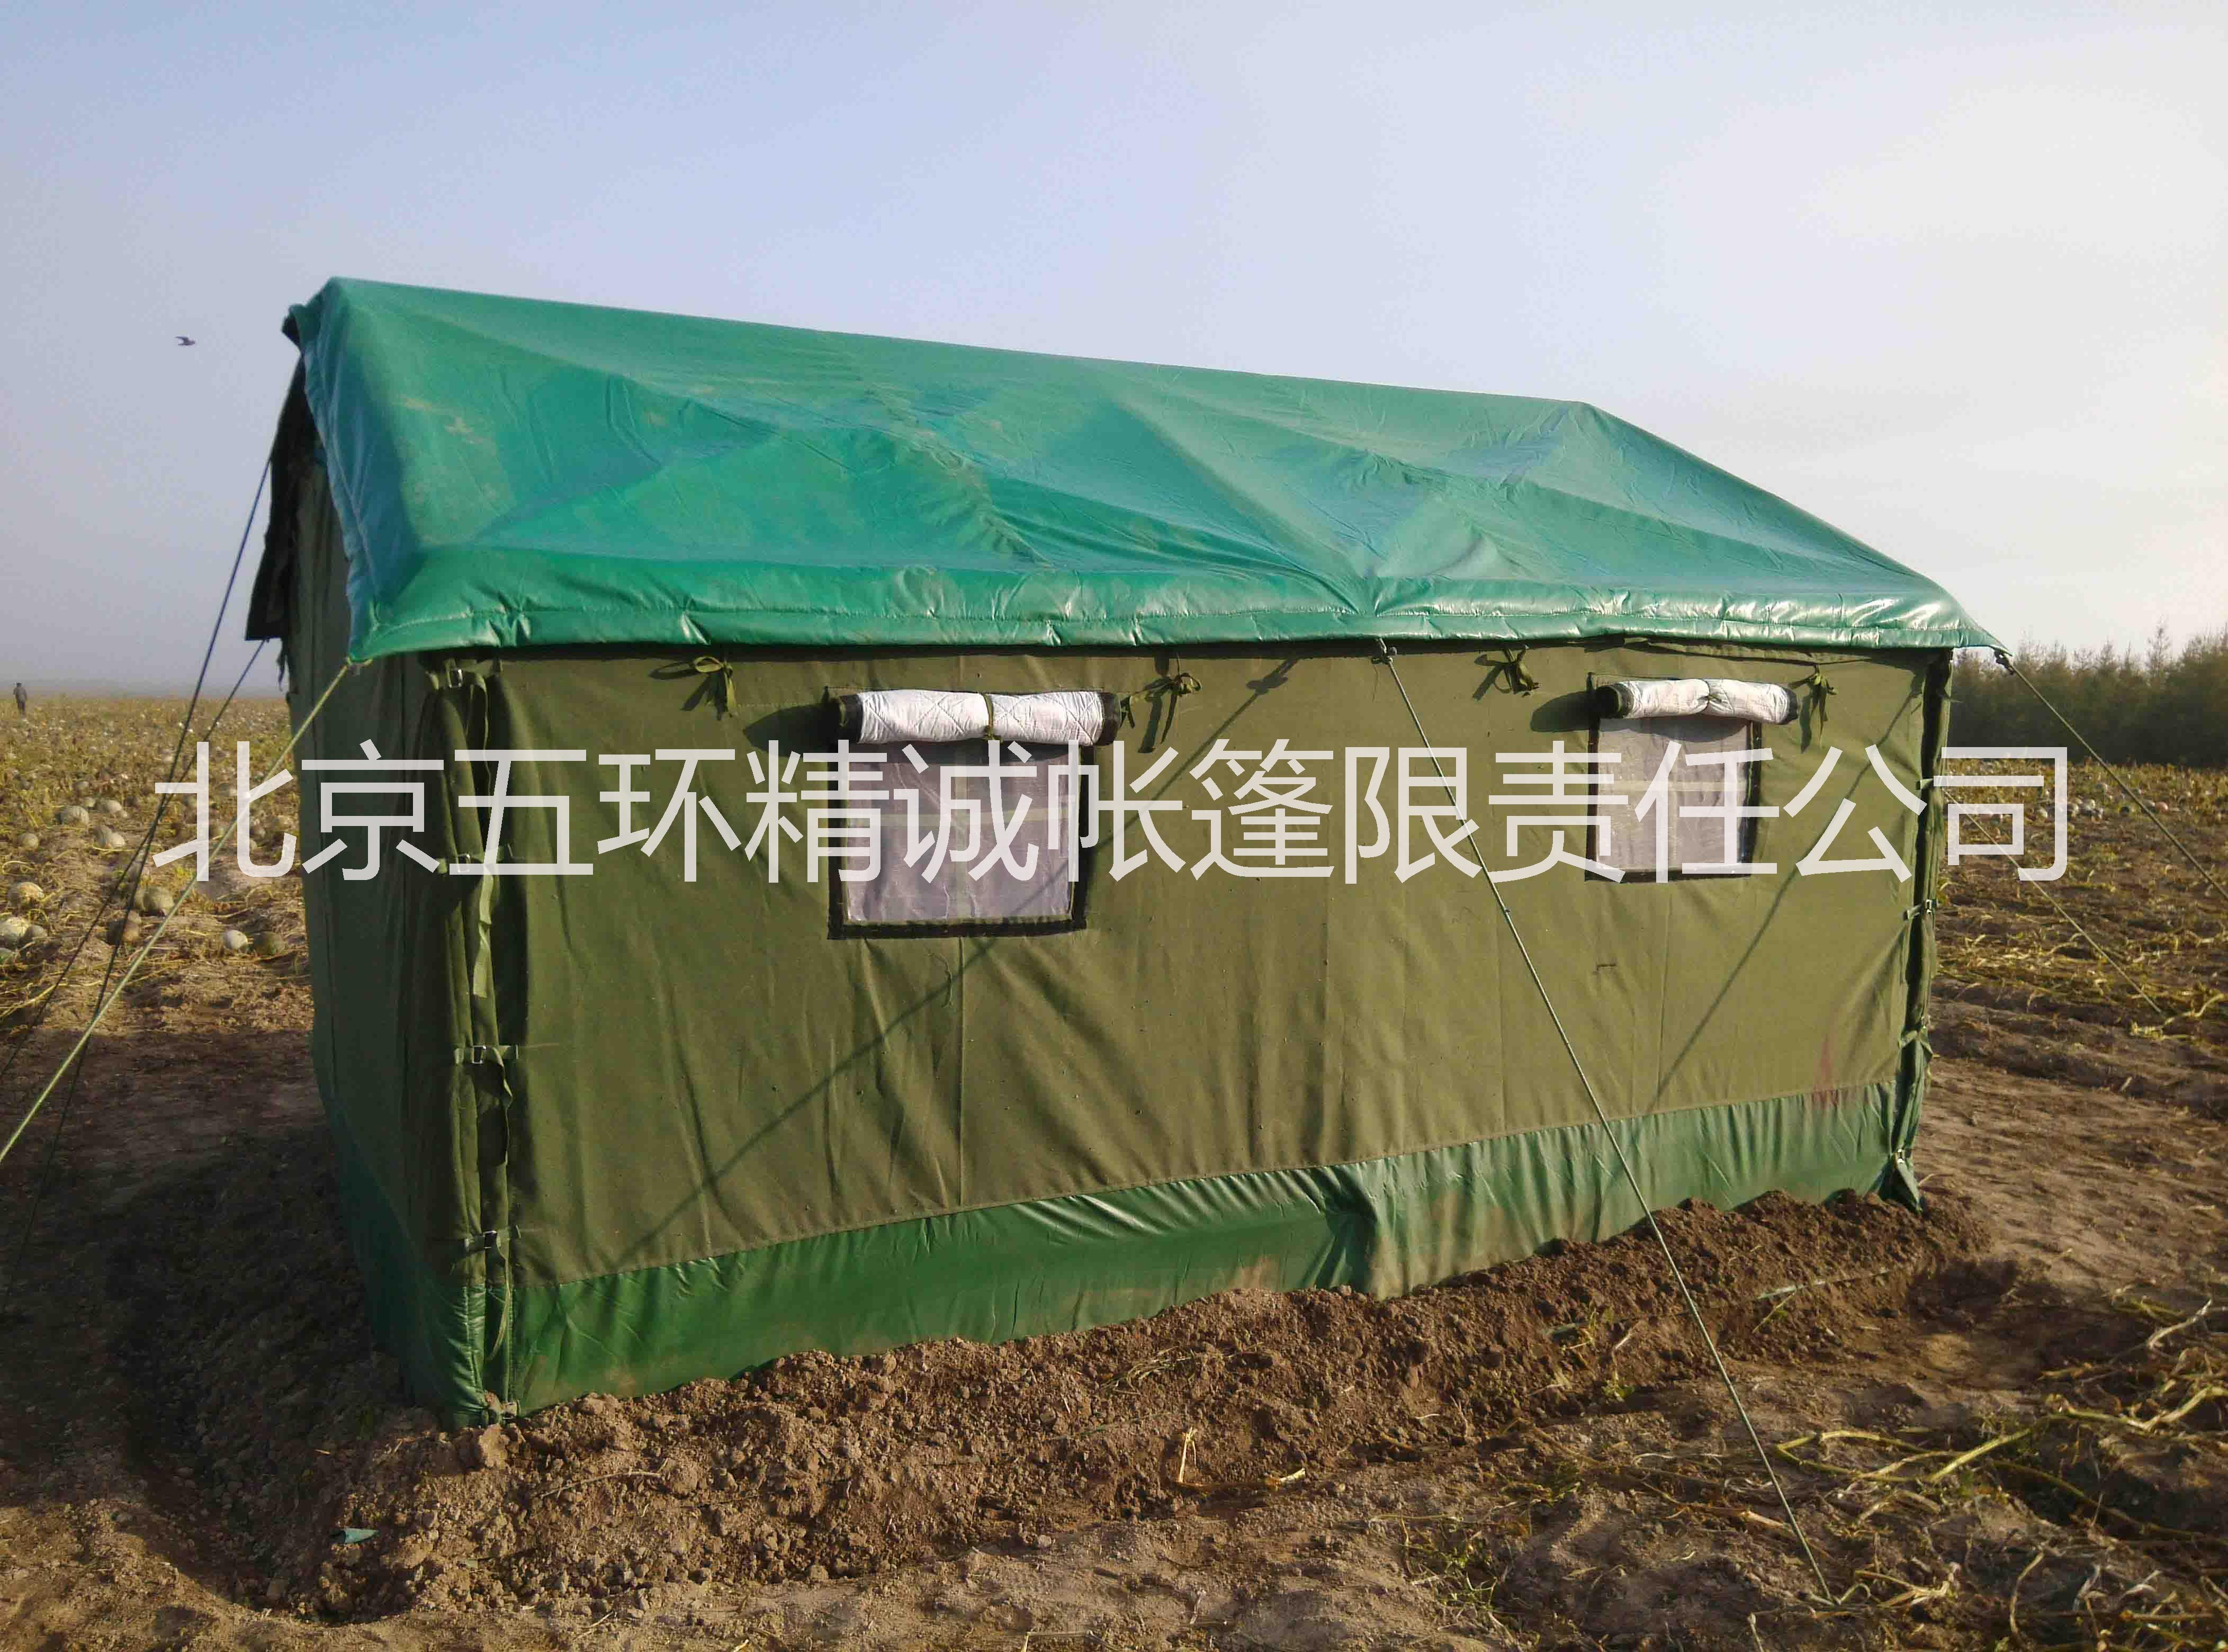 北京施工帐篷工地帐篷棉帐篷工程帐篷住宿帐篷